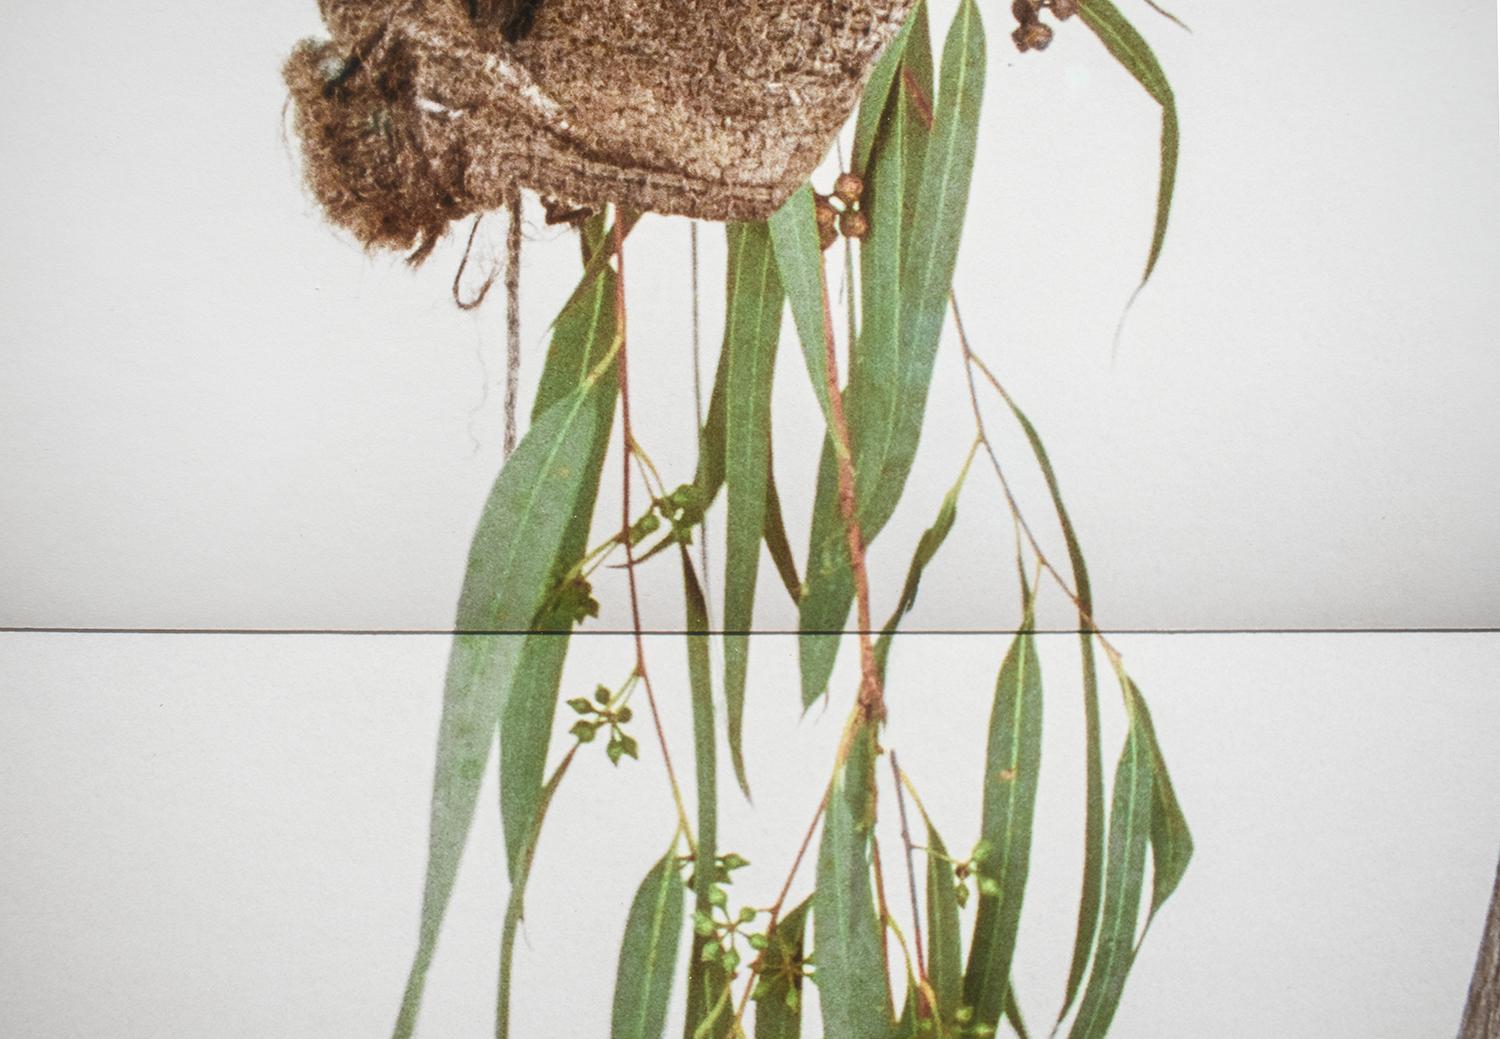 La moisson d'oliviers (photo de nature morte de branches d'arbres et d'un sac d'oliviers en toile de jute) - Contemporain Photograph par David Halliday